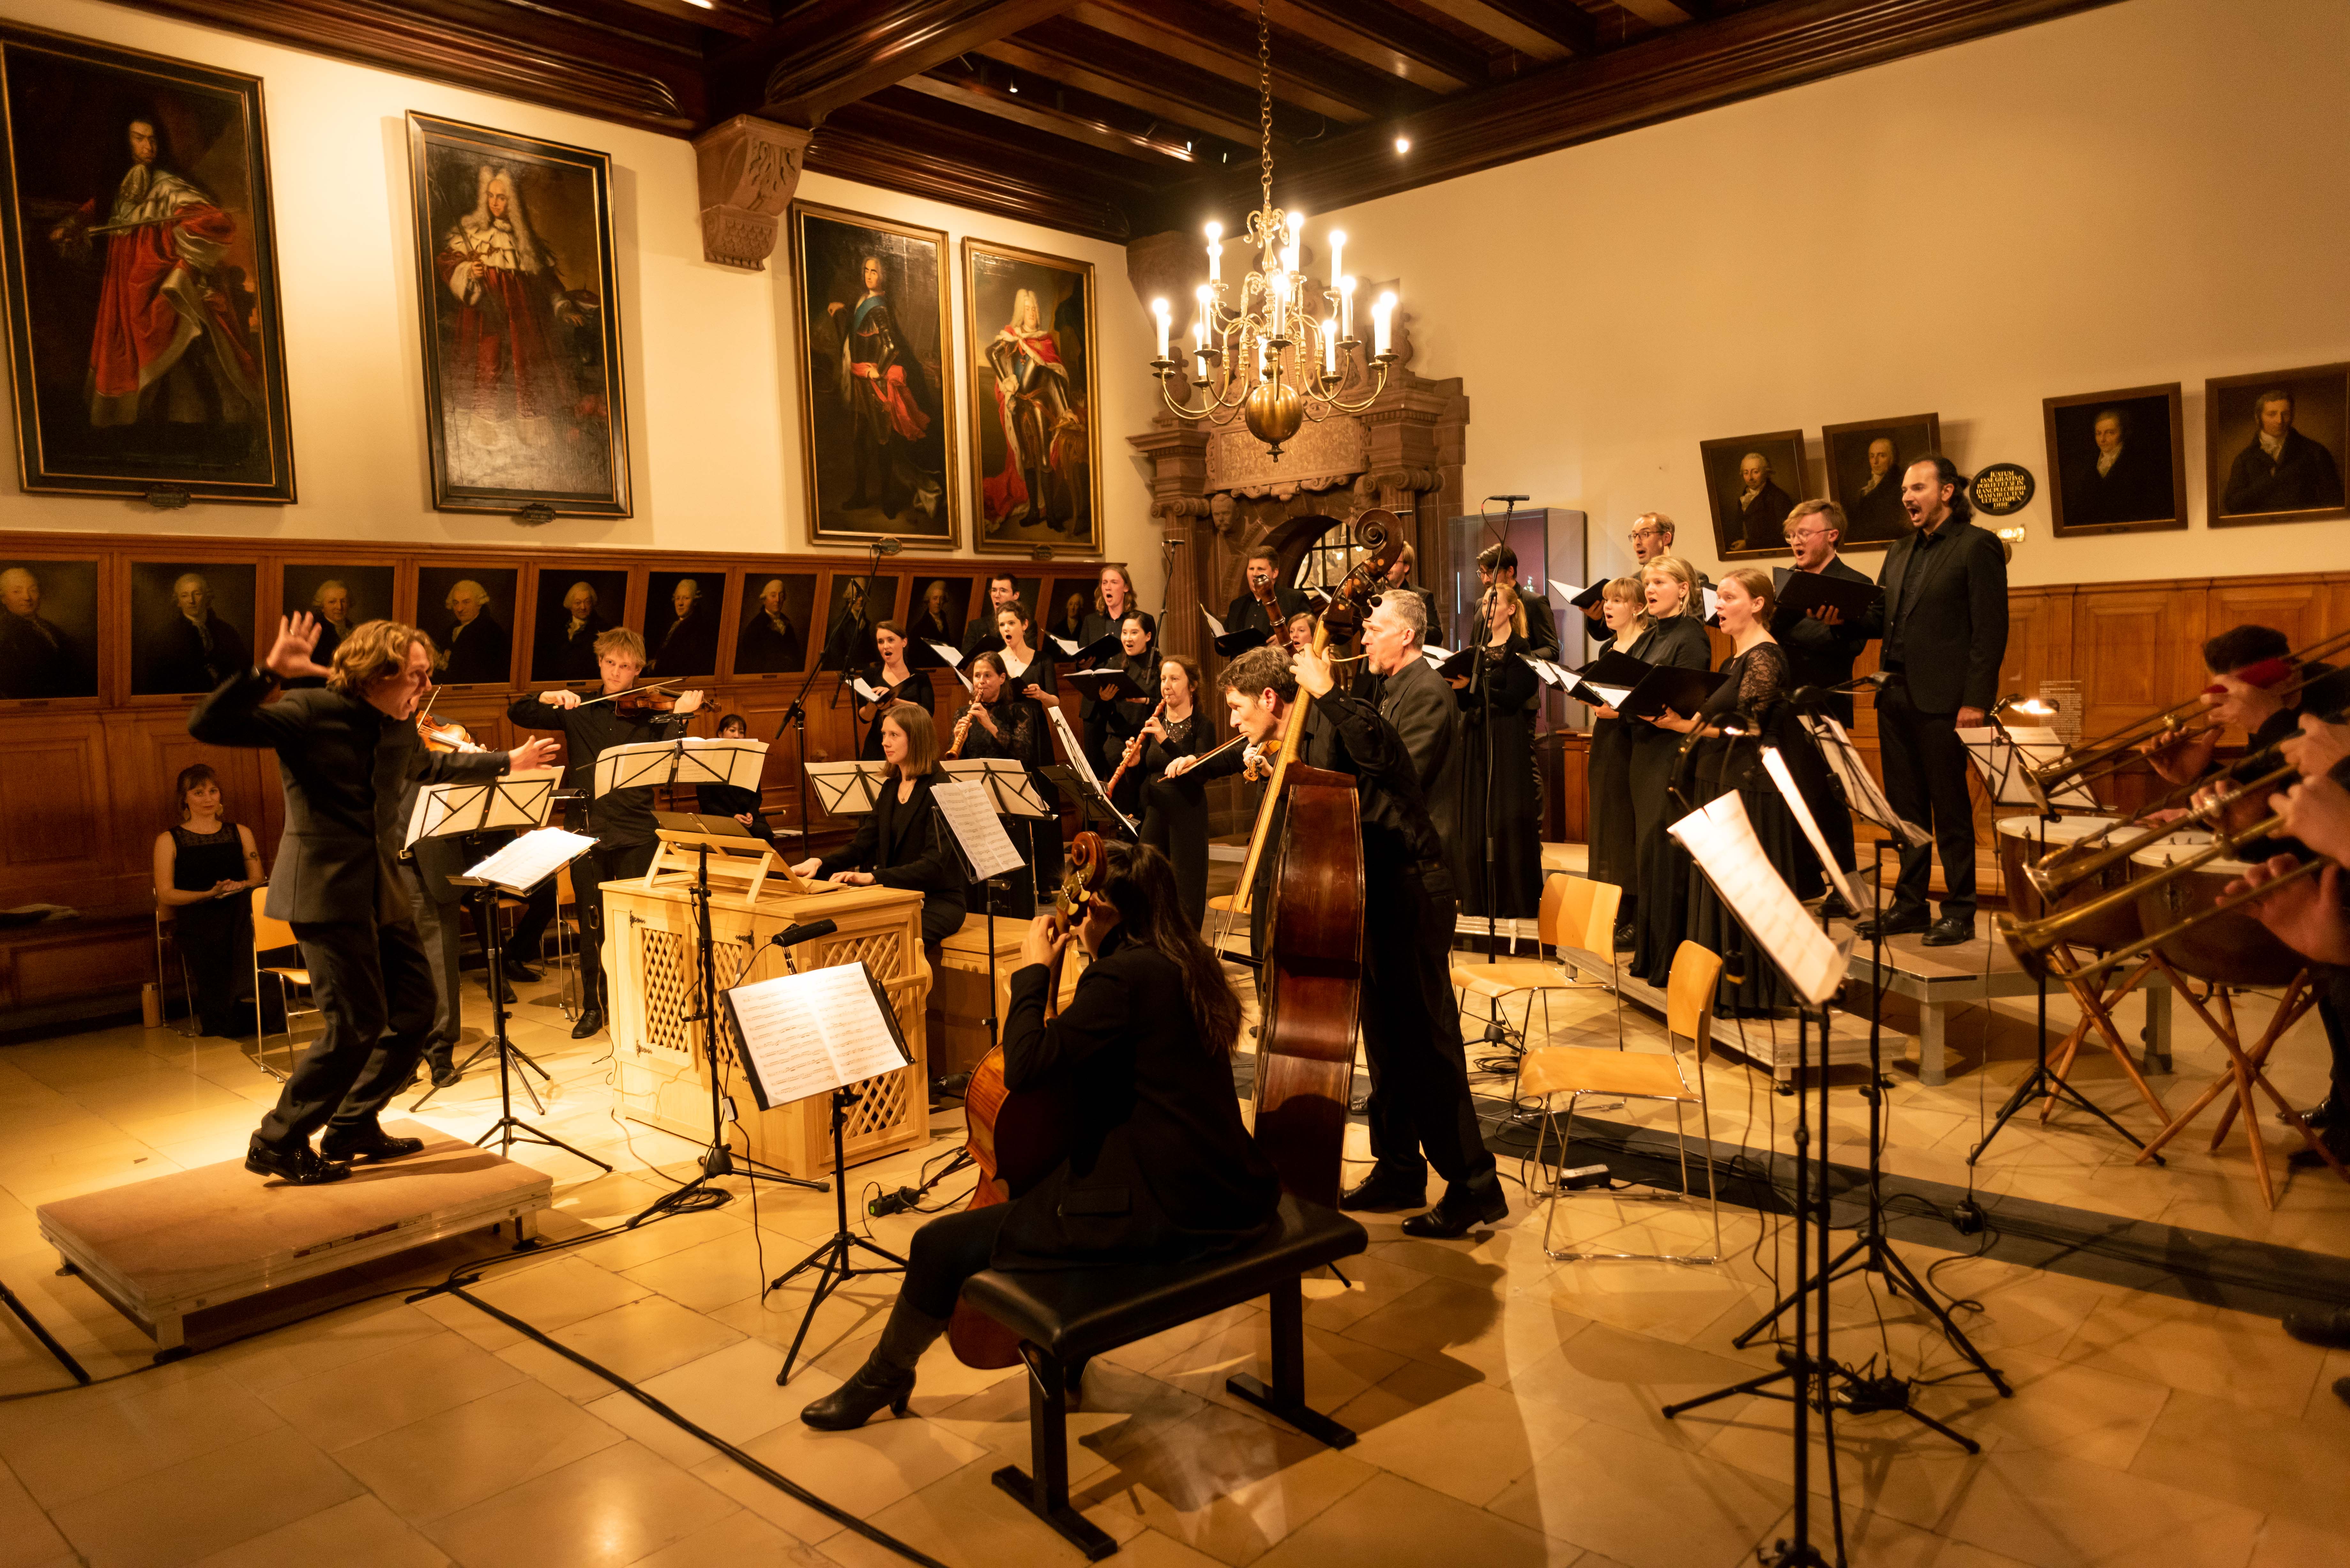   »Wunderbare Musik, seit 200 Jahren ungehört« | Das Leipziger Gellert-Ensemble widmet sich der Aufklärung und Empfindsamkeit – auch in seinem Weihnachtskonzert  